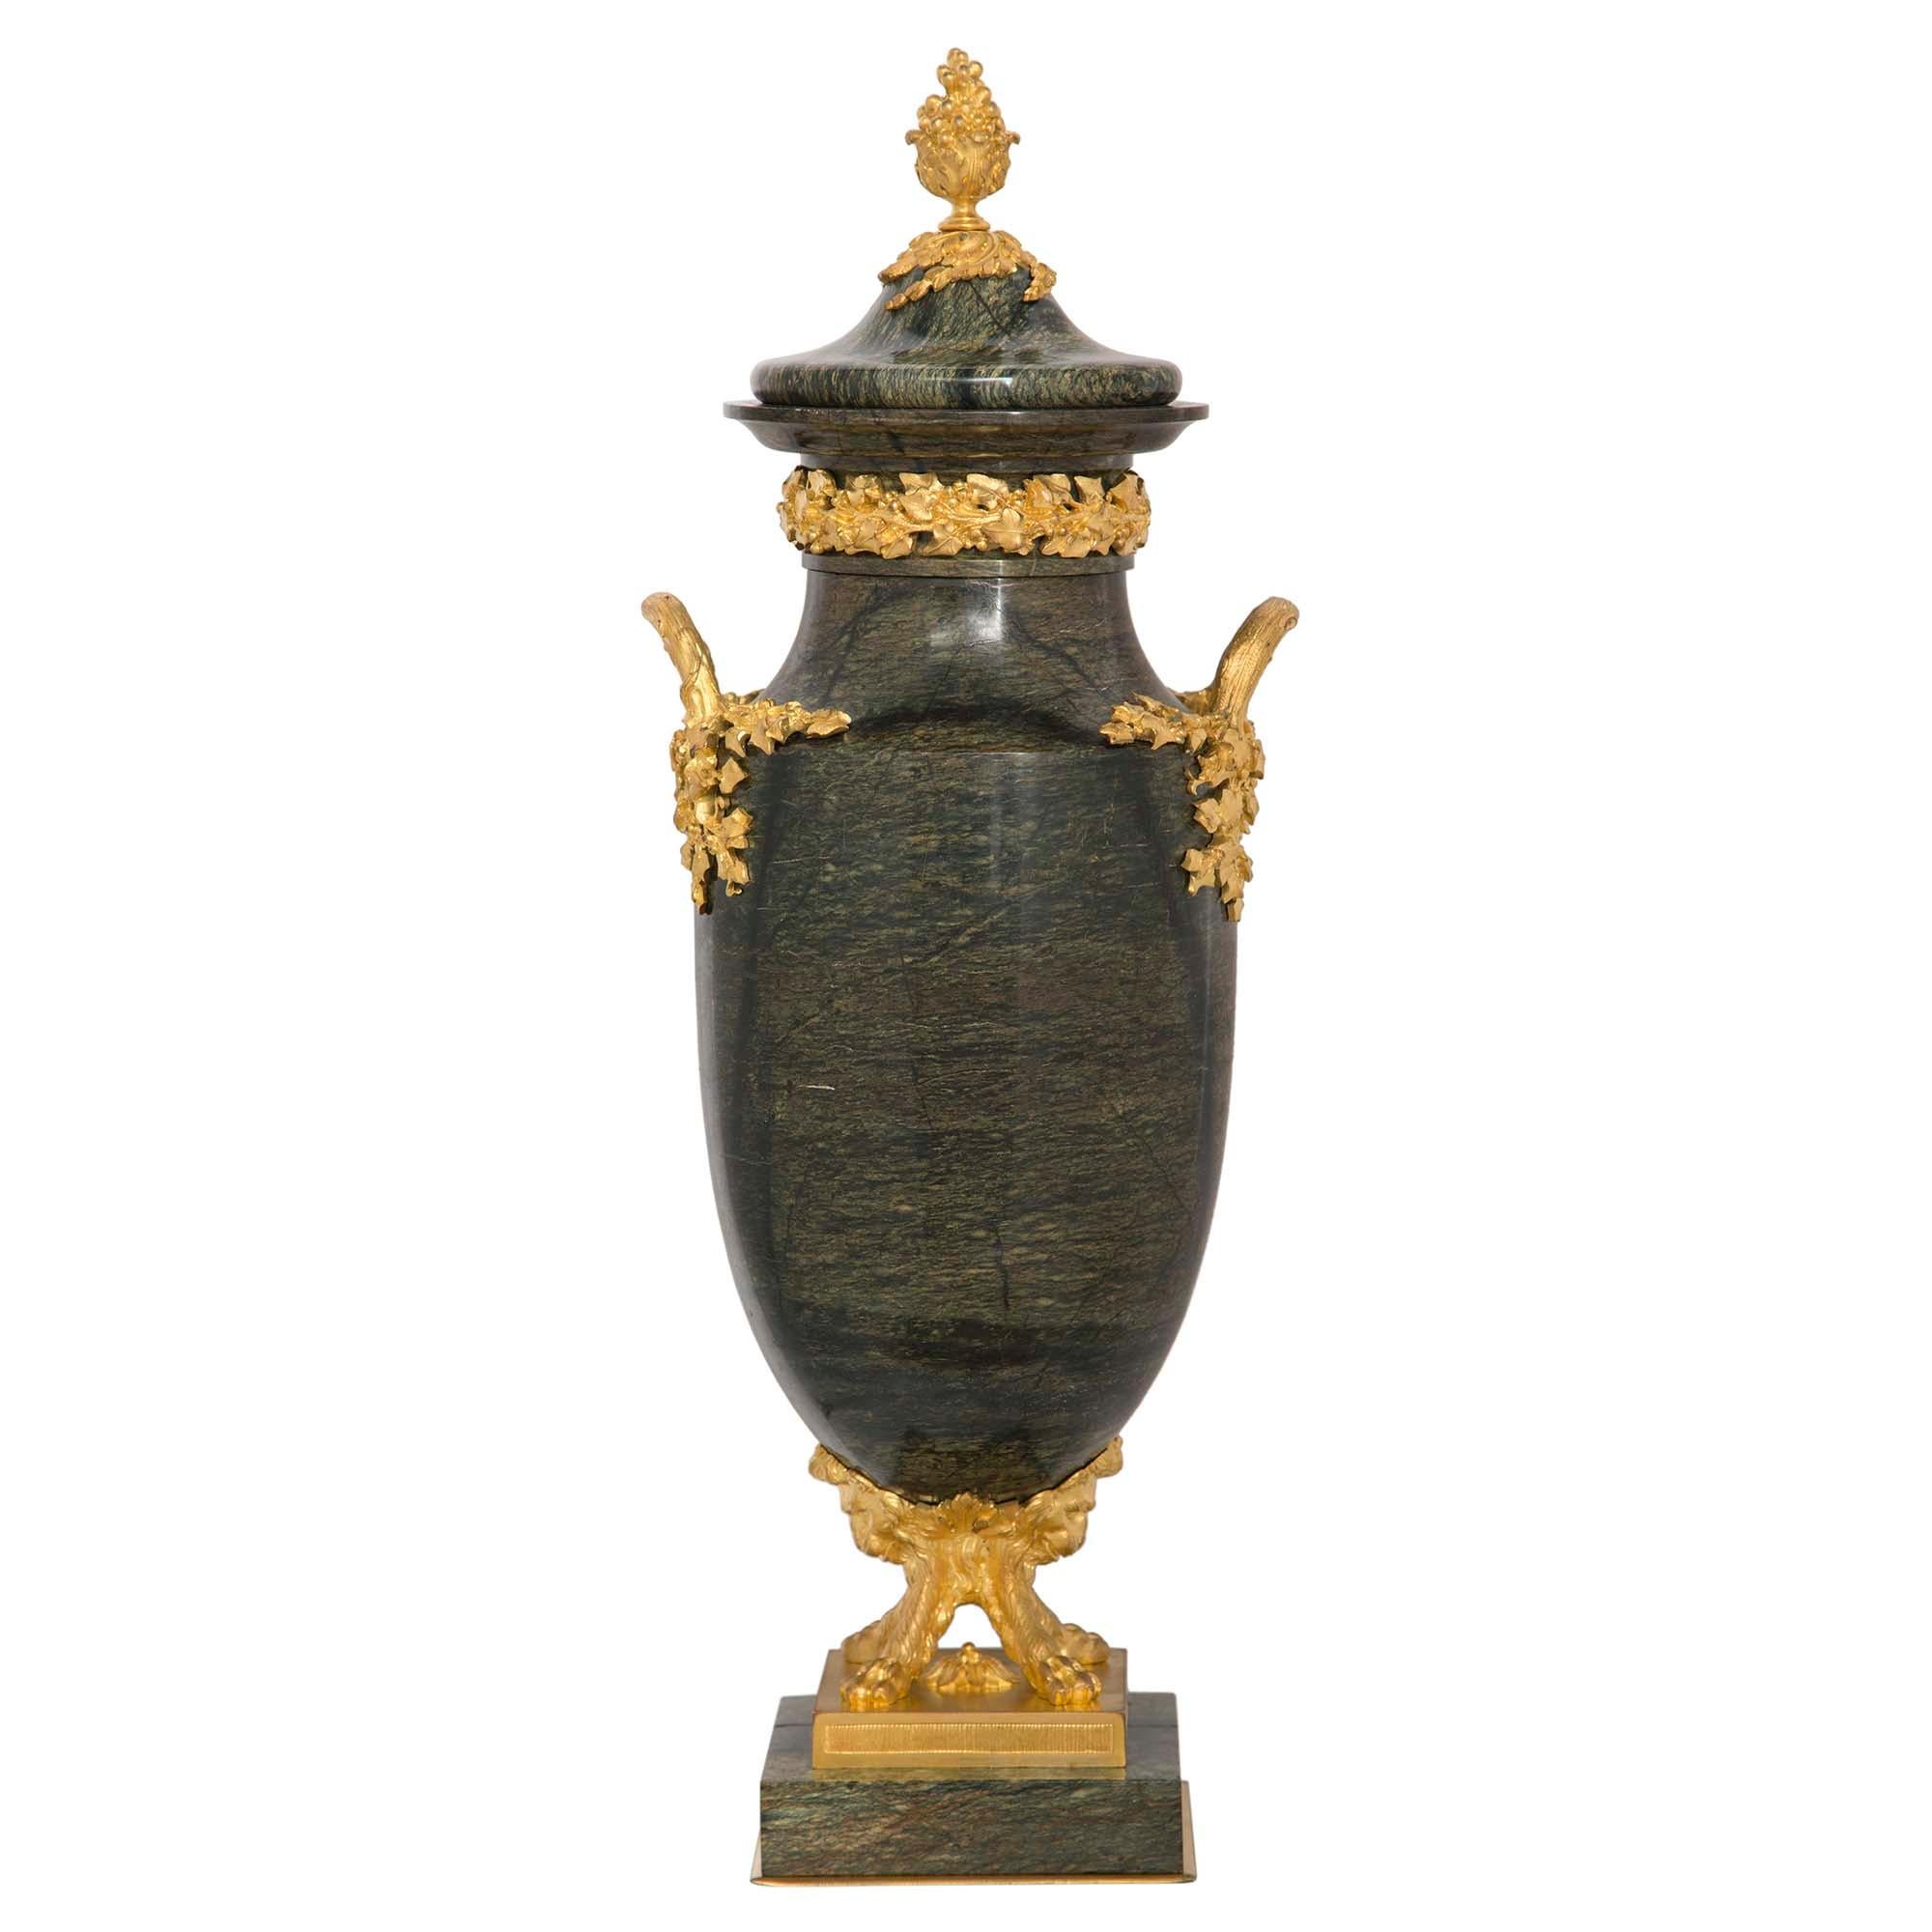 Une très élégante urne en marbre Brèche Verte d'Egypte et bronze doré, de forme unique, datant du XIXe siècle et de style Louis XVI. Chaque urne est surélevée par une base carrée en marbre, sous un support en bronze doré avec une bande cannelée